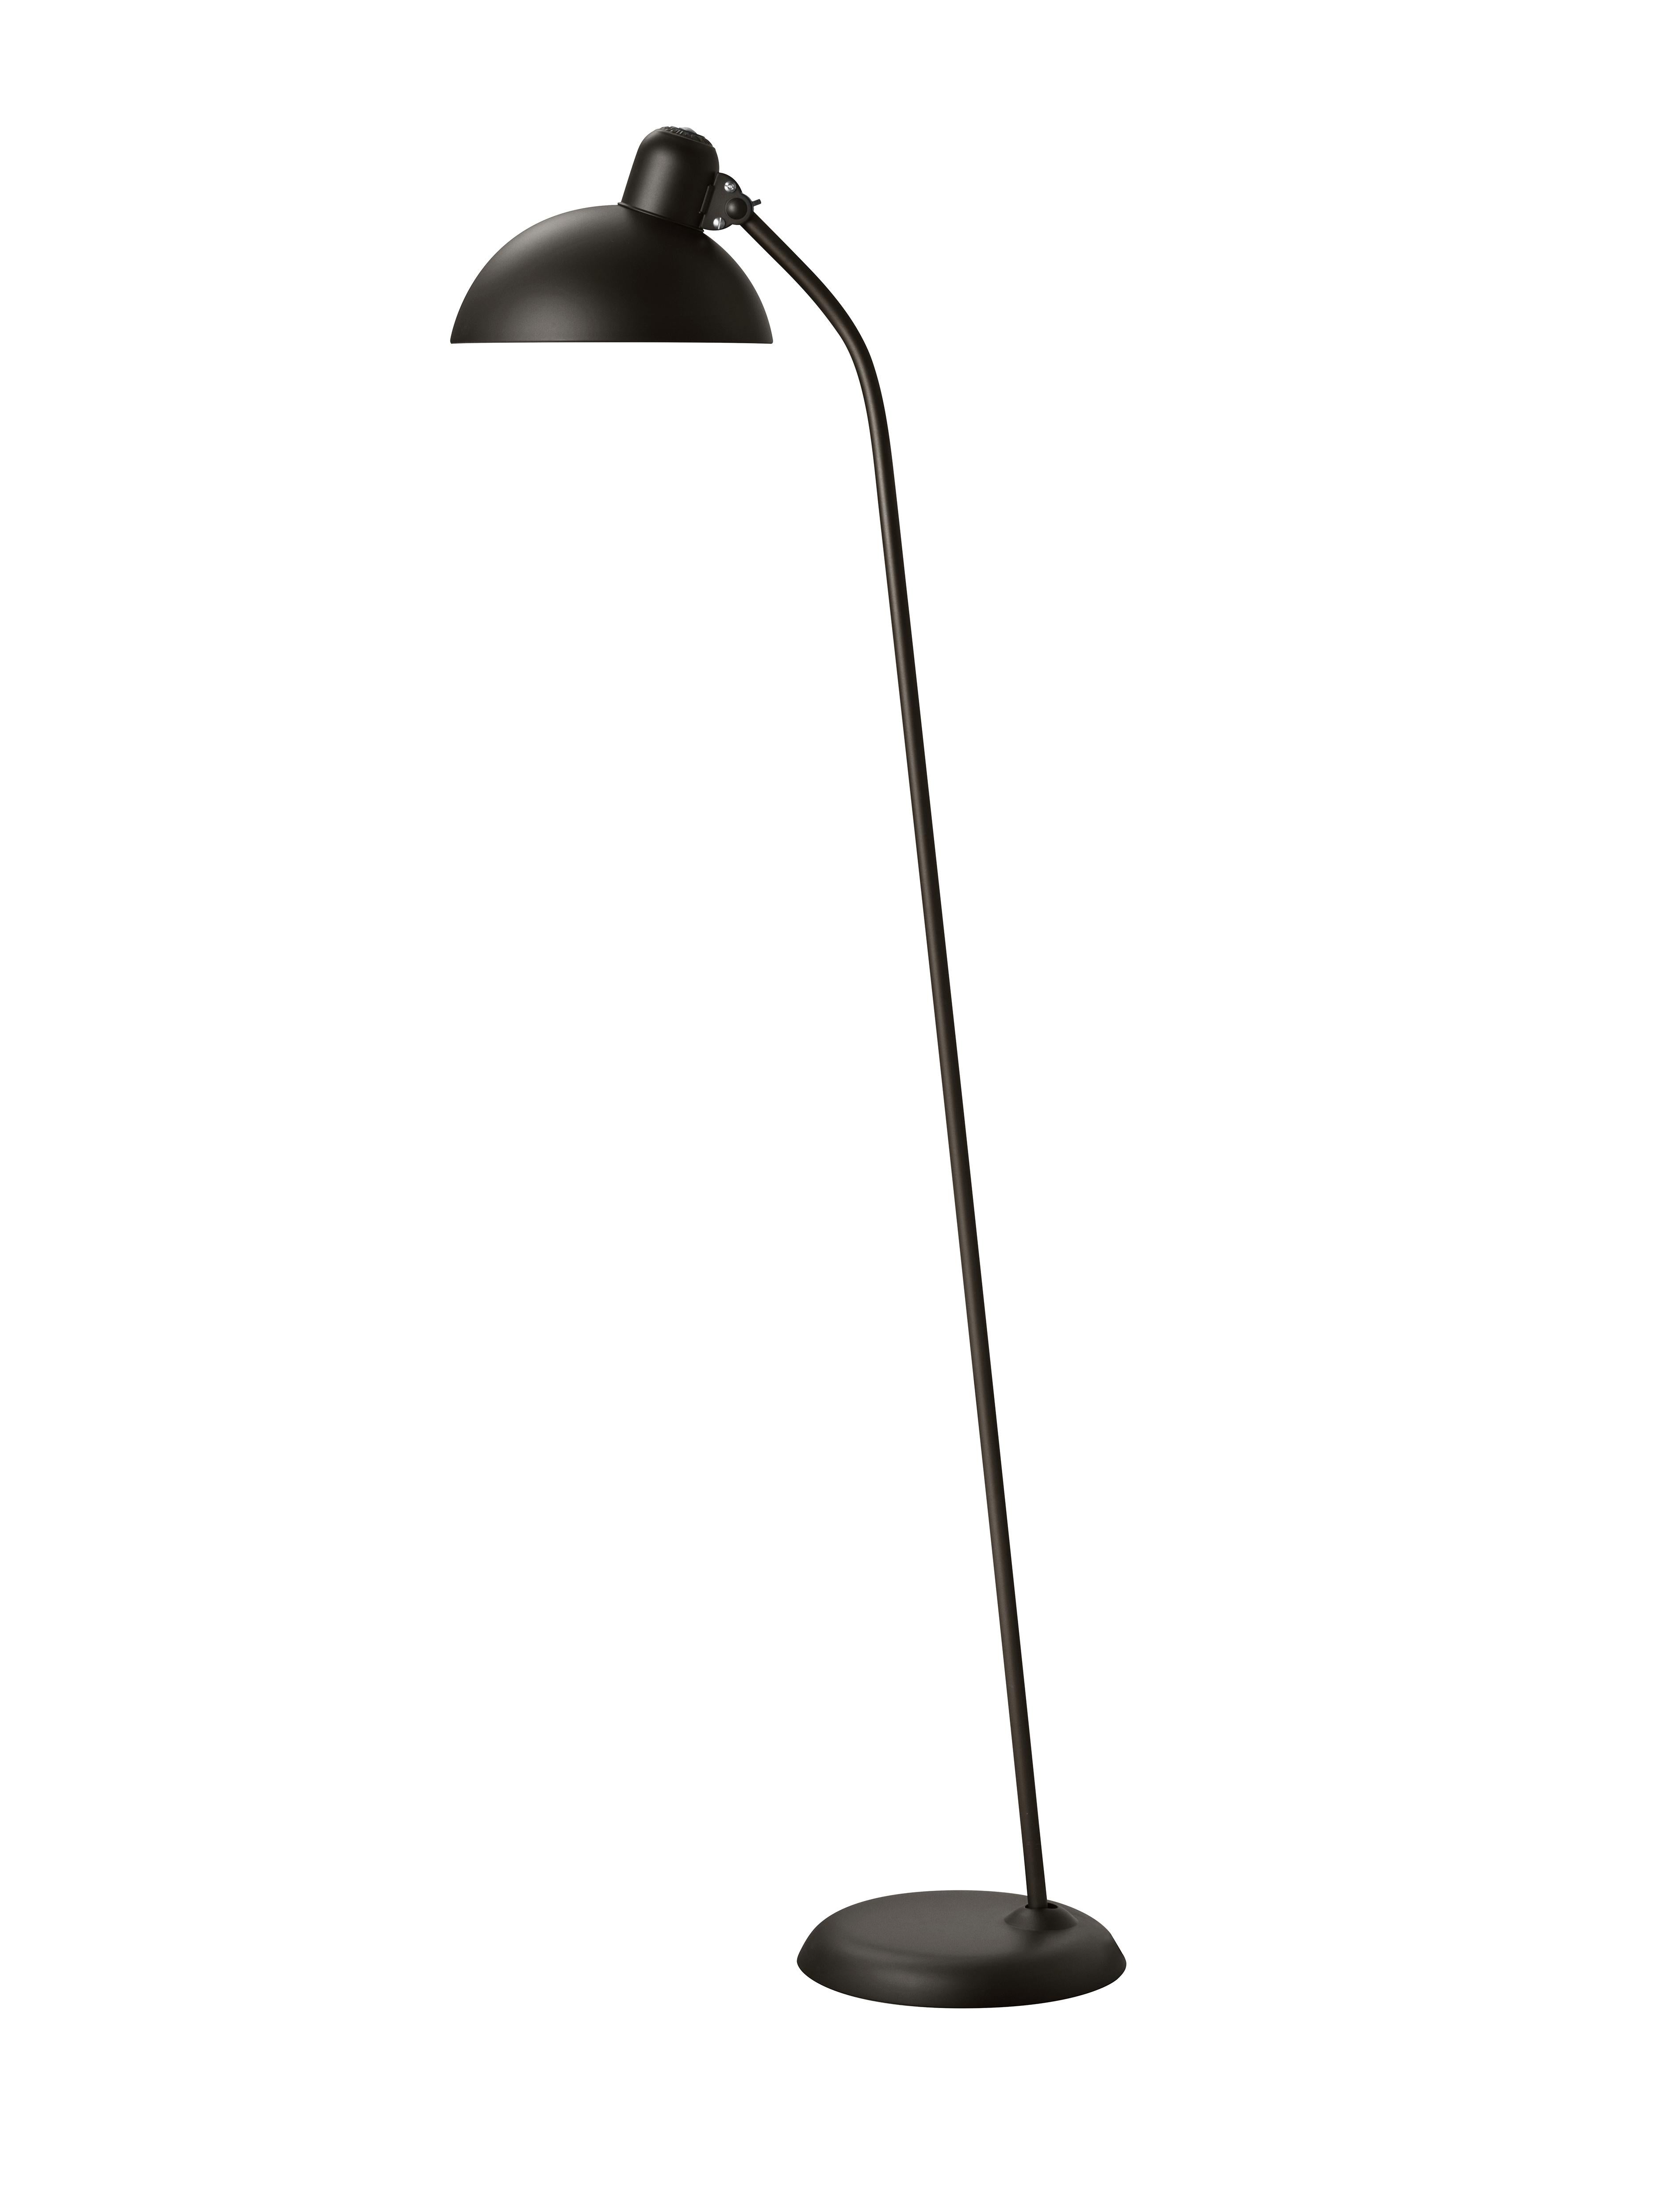 Christian Dell 'Kaiser Idell 6556-F' Floor Lamp for Fritz Hansen in Glossy White For Sale 10